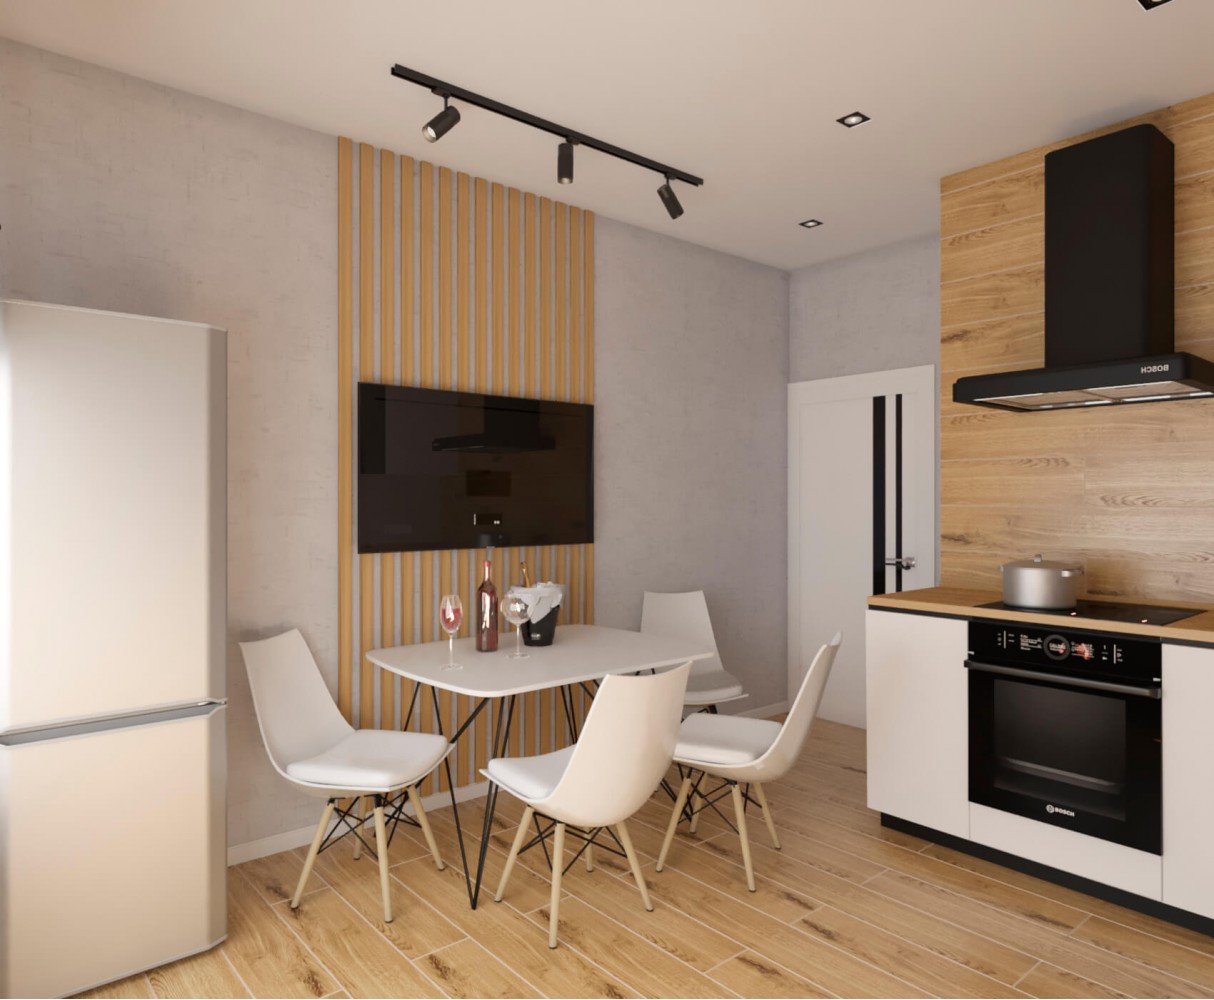 Кухня — Дизайн-проект 2-комнатной квартиры в ЖК Омега, 64 м.кв — дизайнер Елена Курник